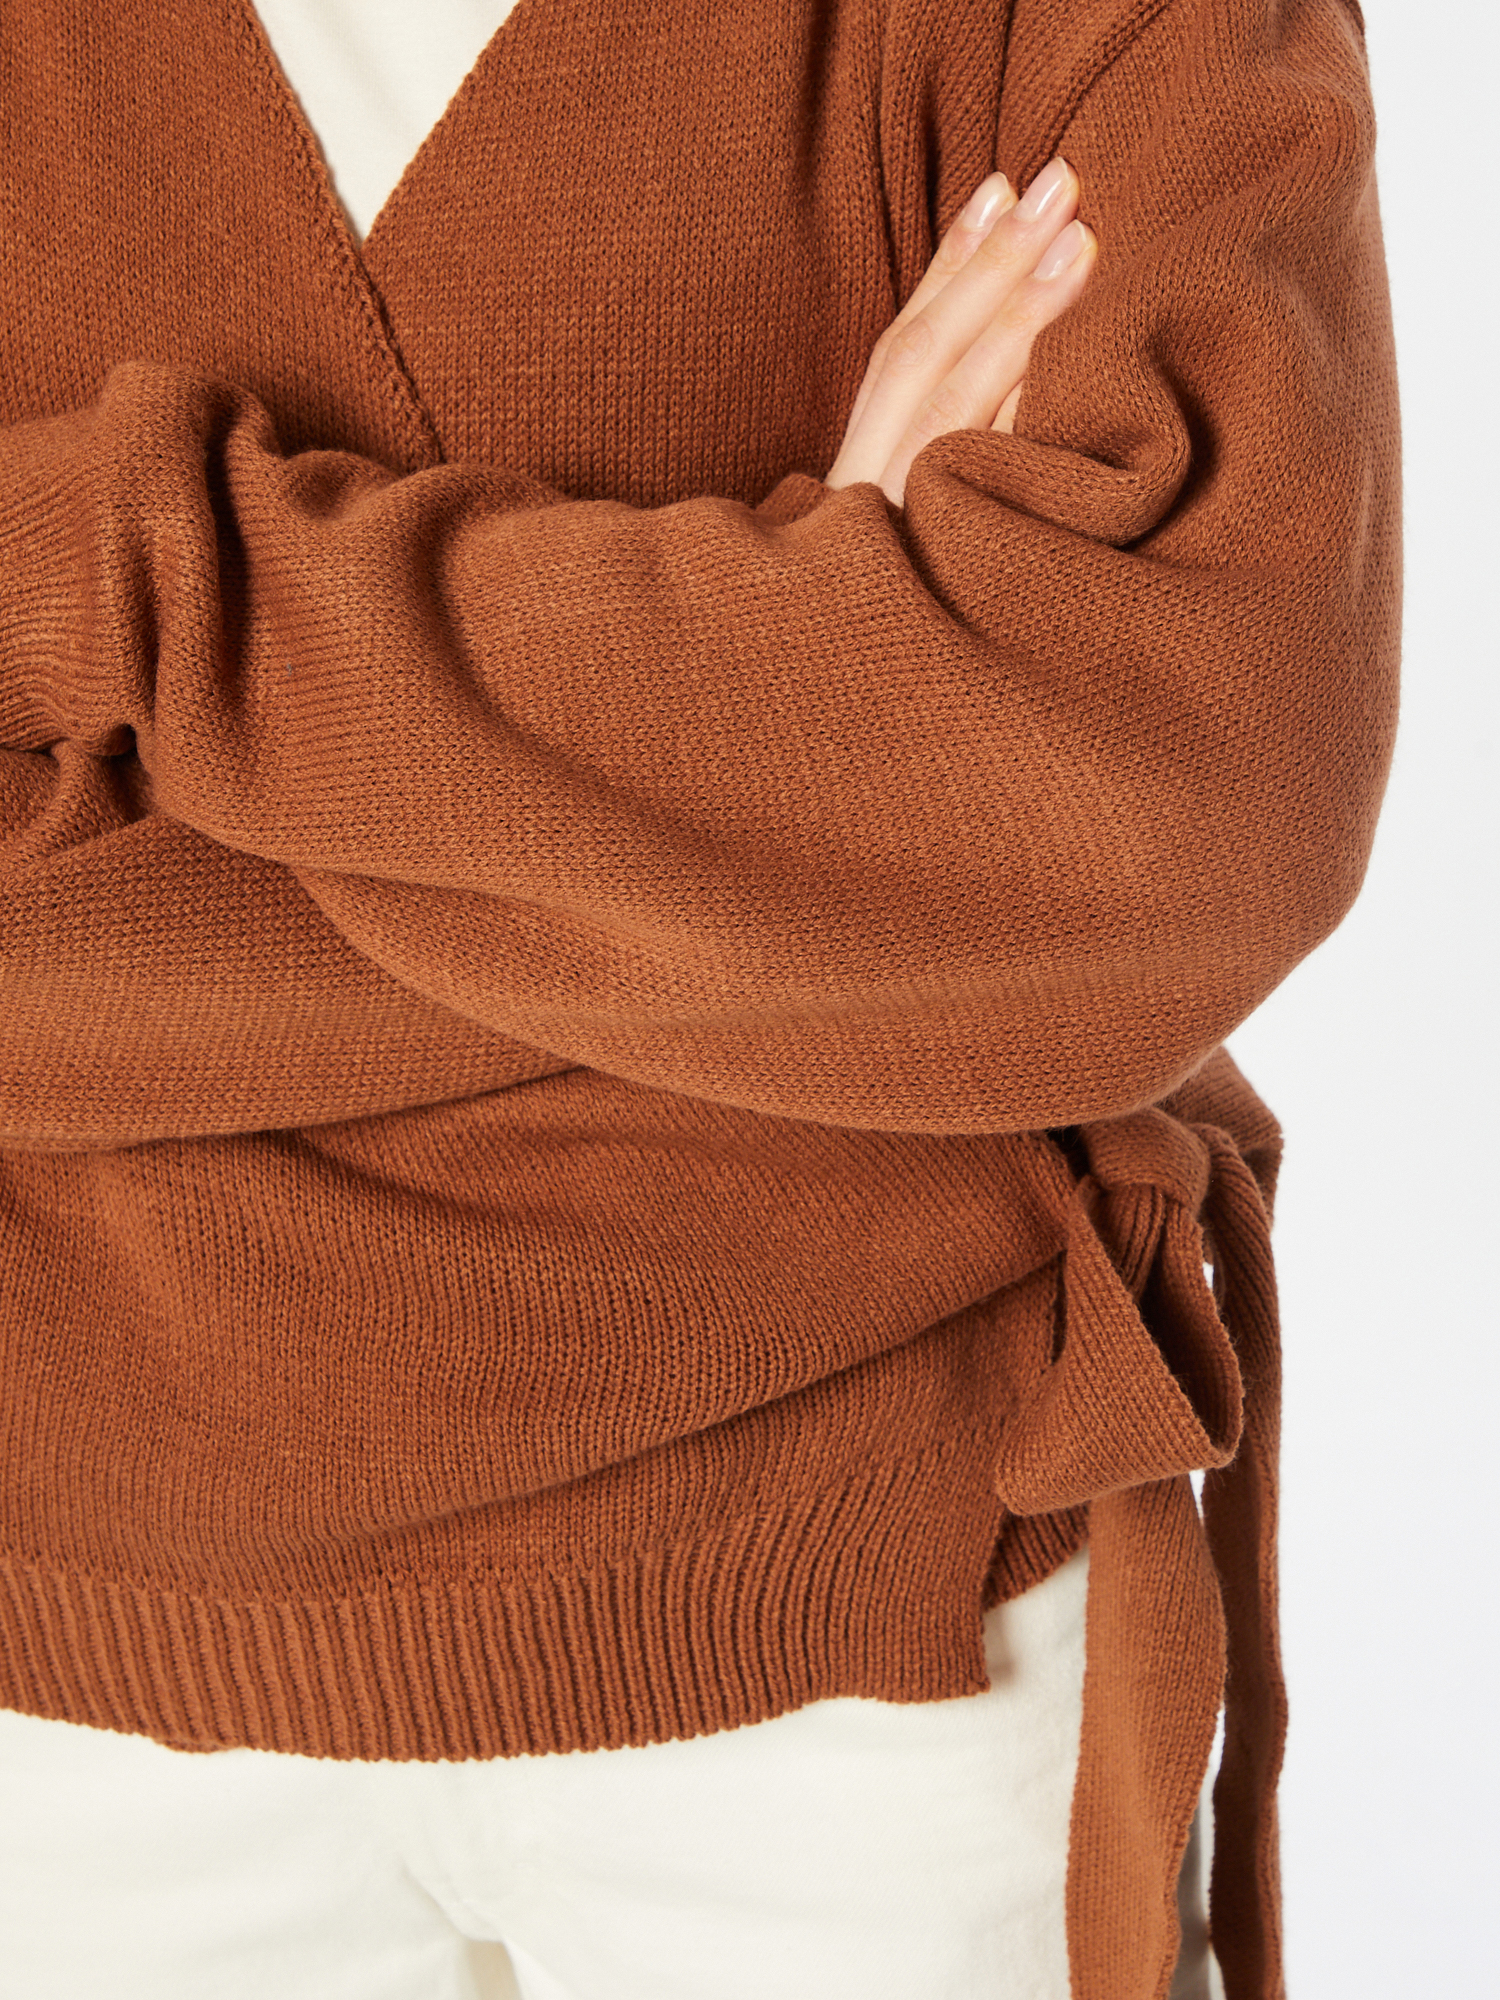 Odzież Swetry & dzianina Femme Luxe Sweter RENEE w kolorze Brązowym 